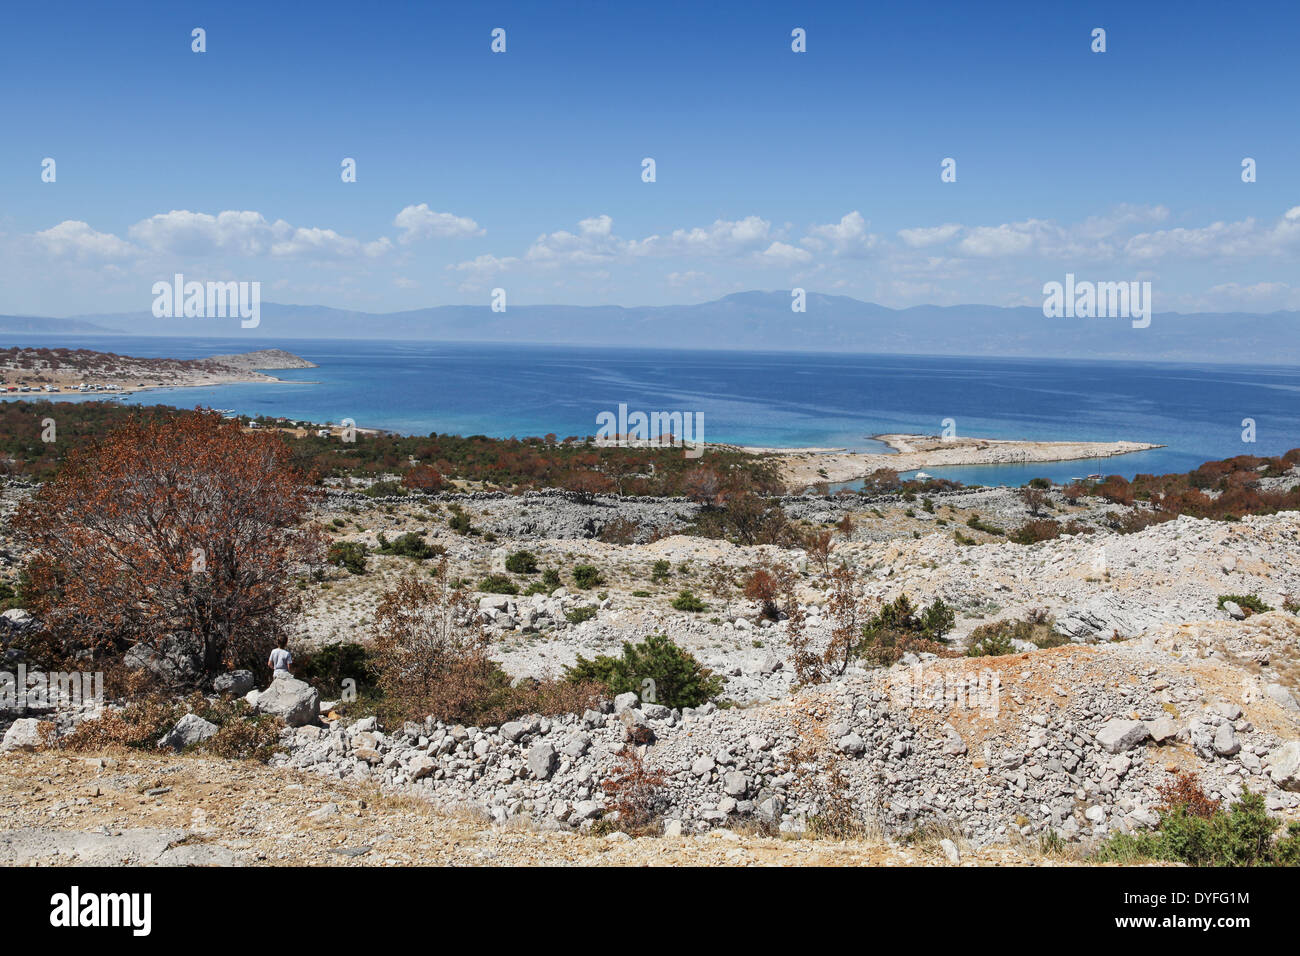 Adria und bergige Küste Kroatiens von der Insel Krk, die größte kroatische Insel. Stockfoto